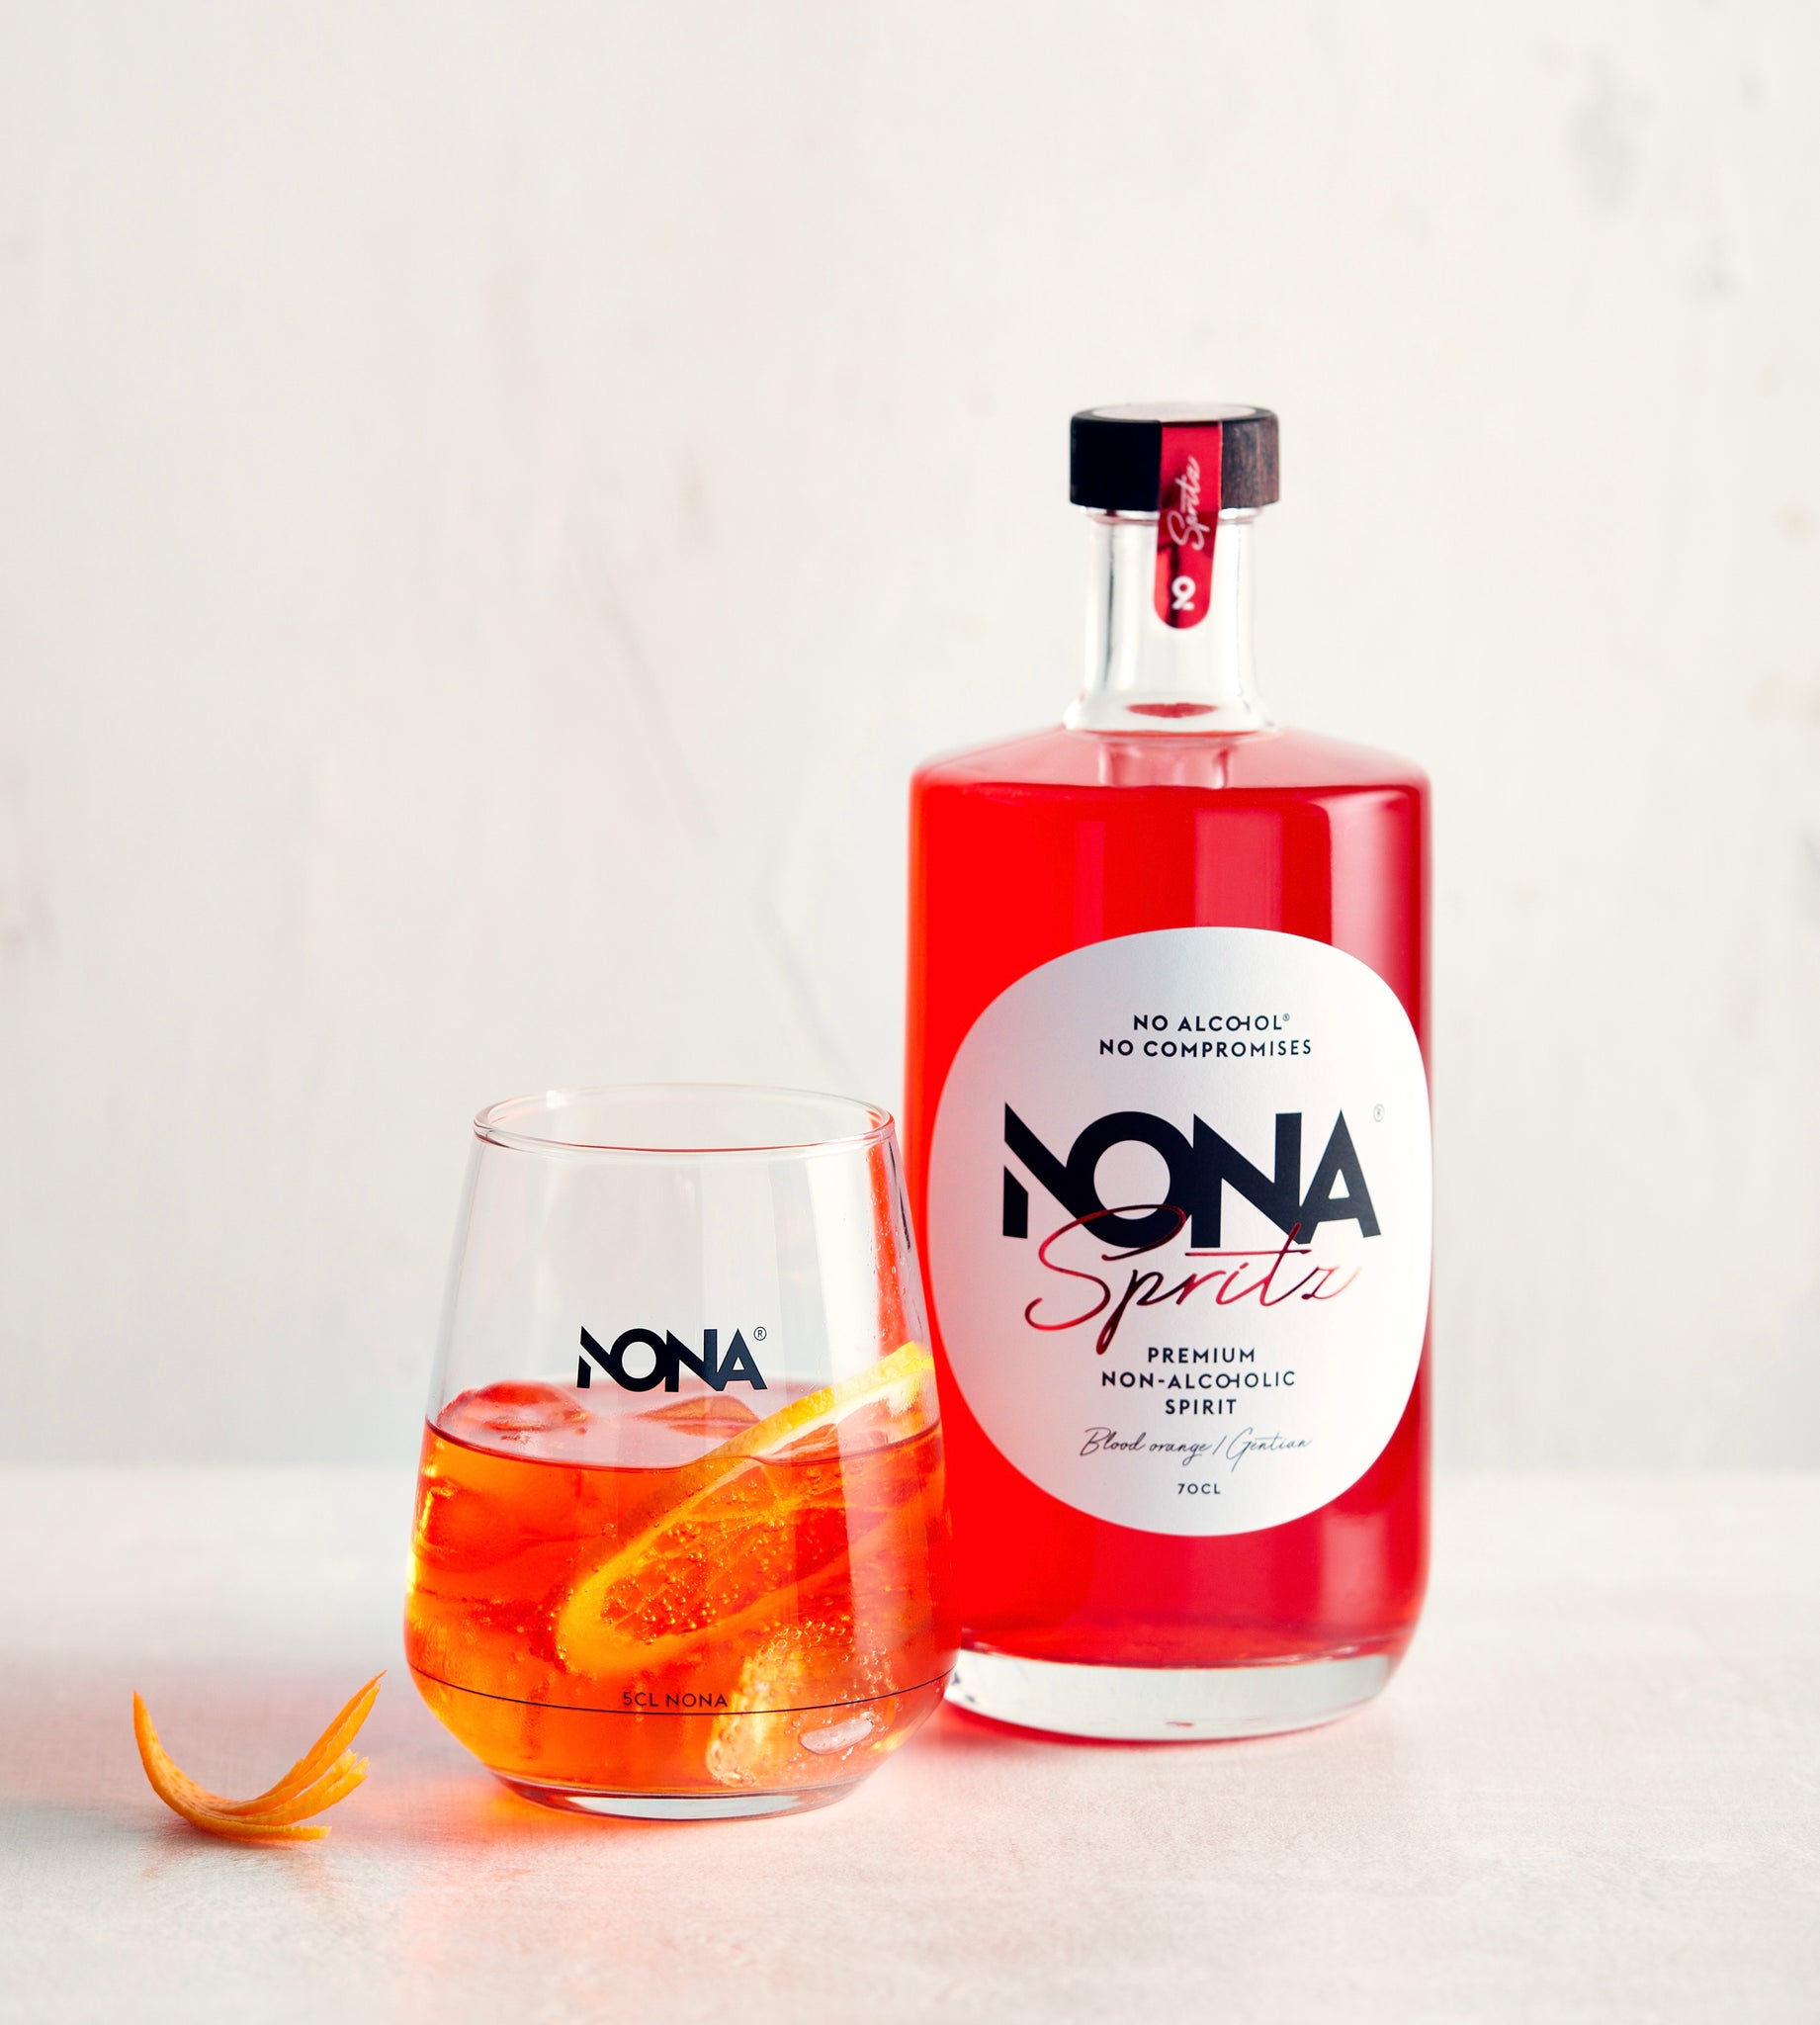 NONA Spritz - non alcoholic spritz